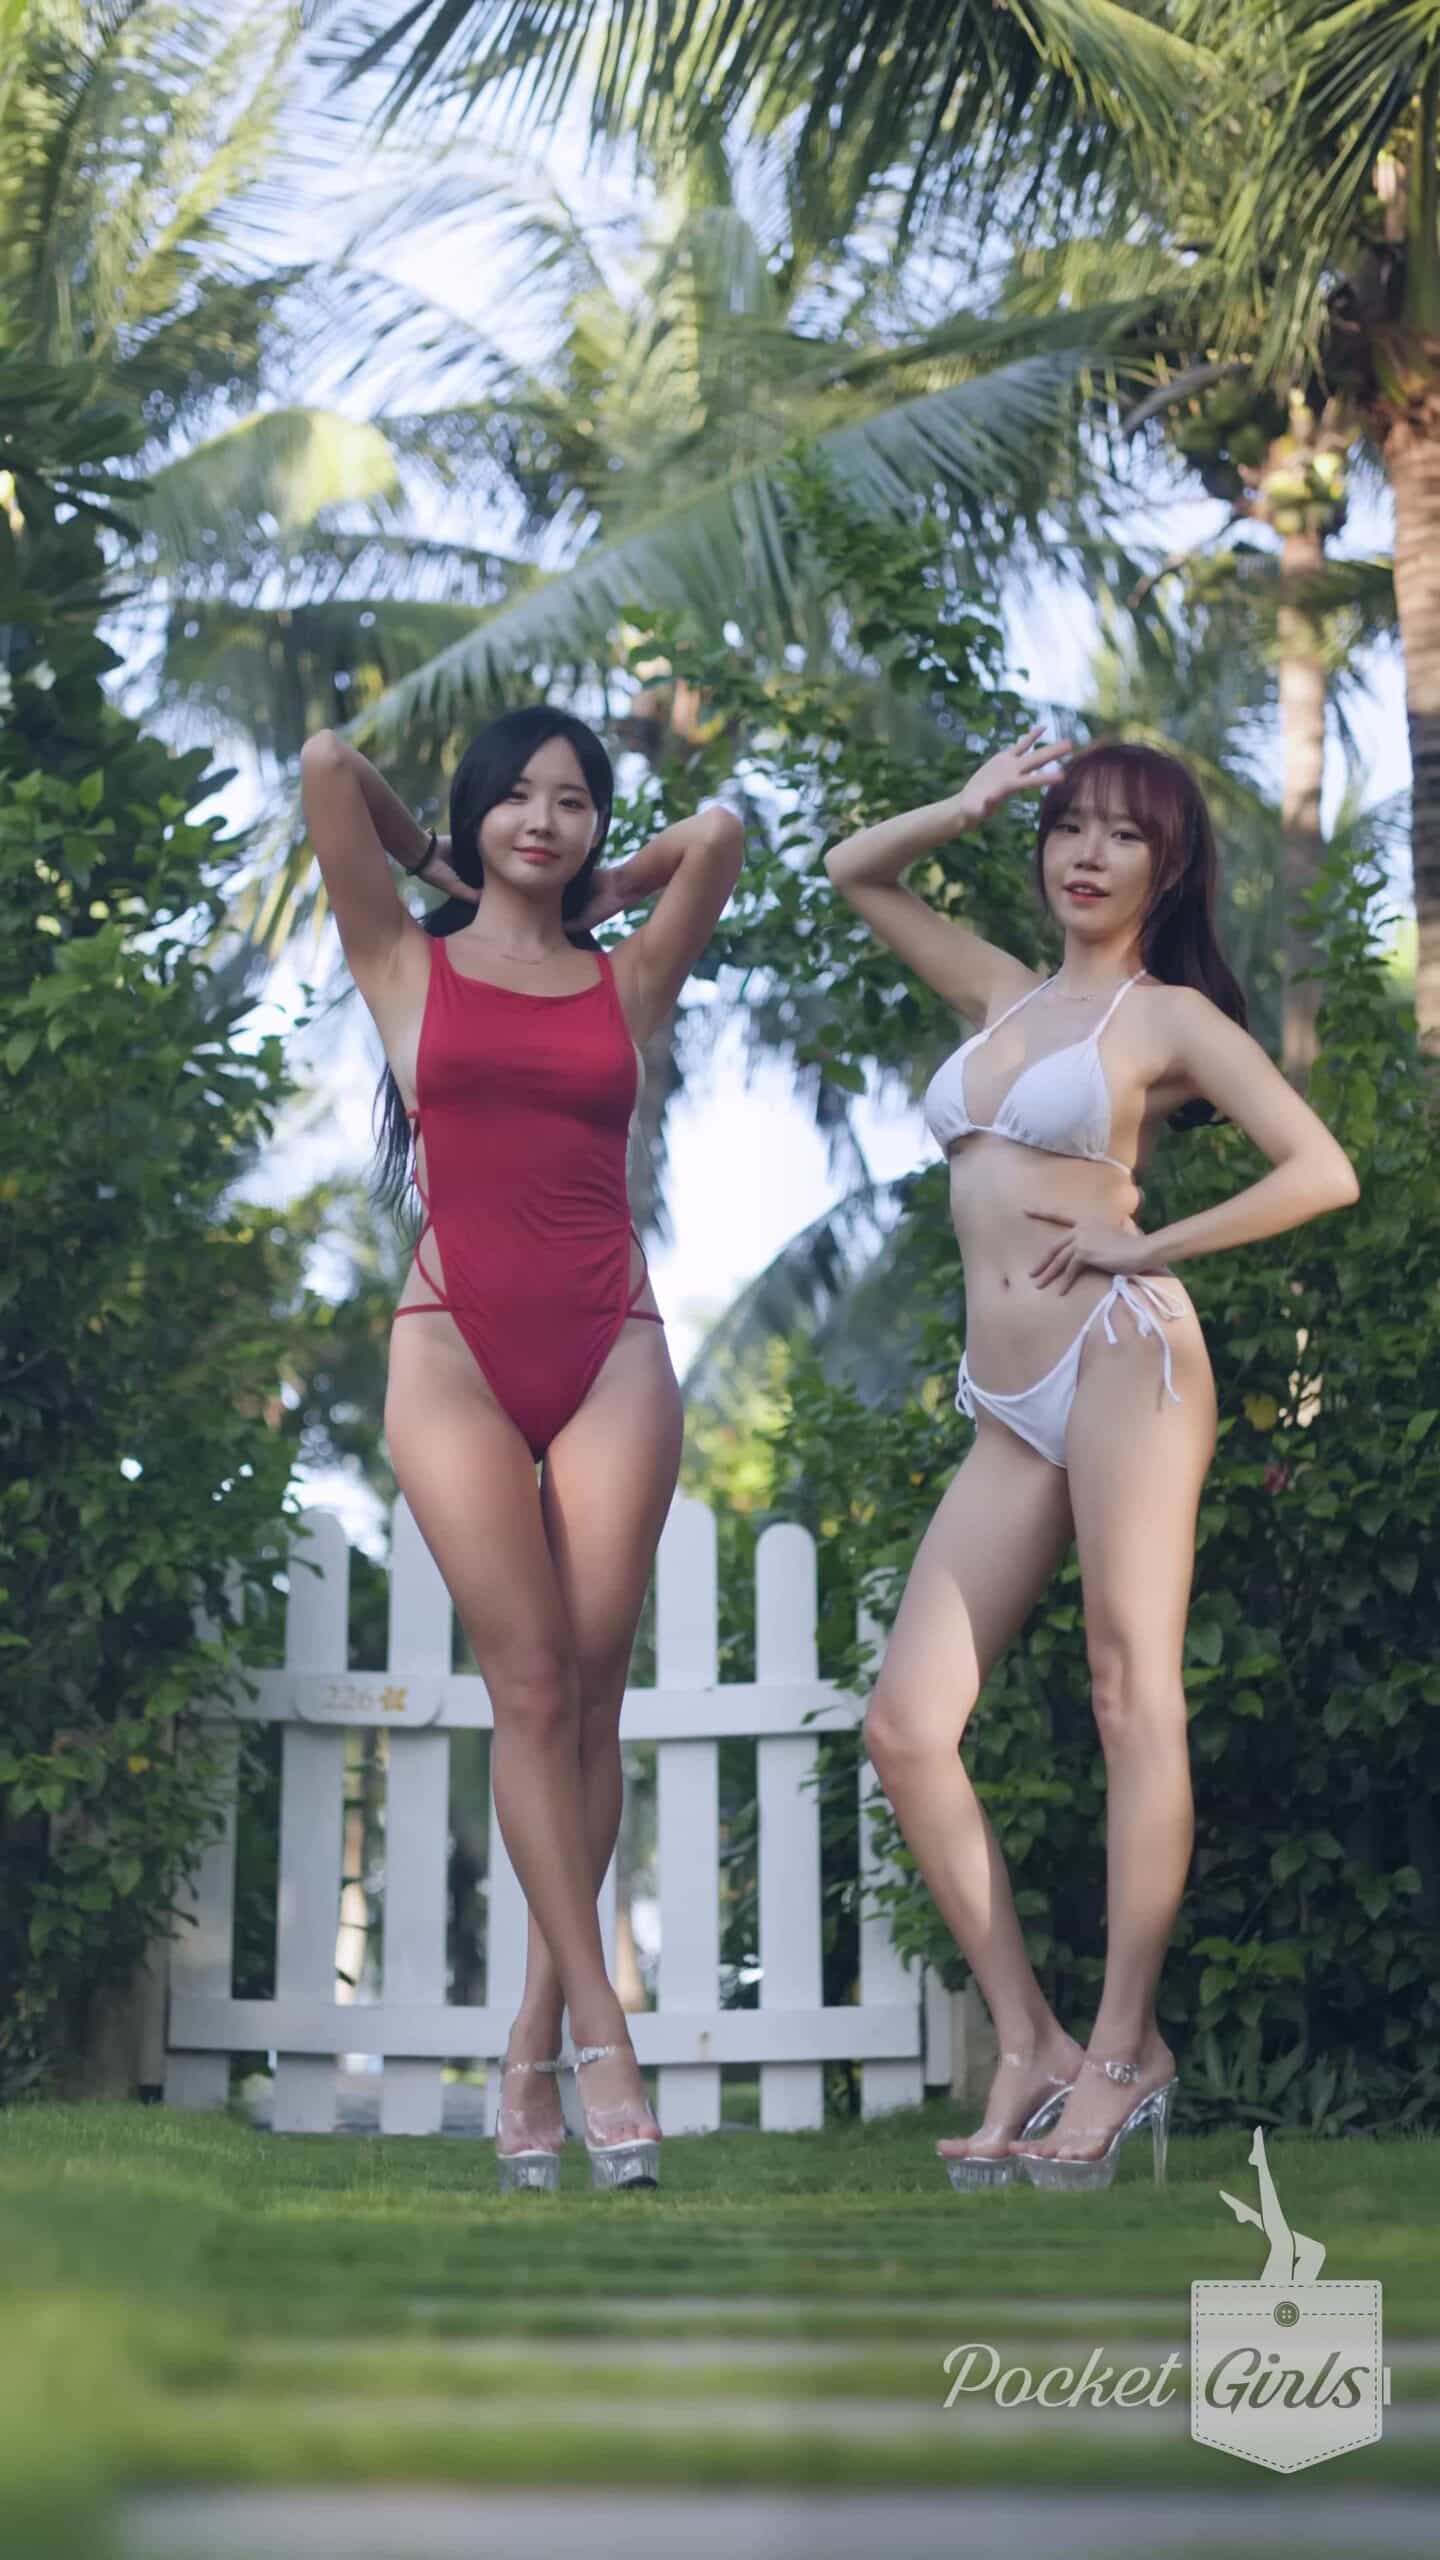 Bikini Dance at Ocean View Garden, Habin & Minchae, Pocket Girls, 하빈 & 민채, 포켓걸스 – #00329插图1